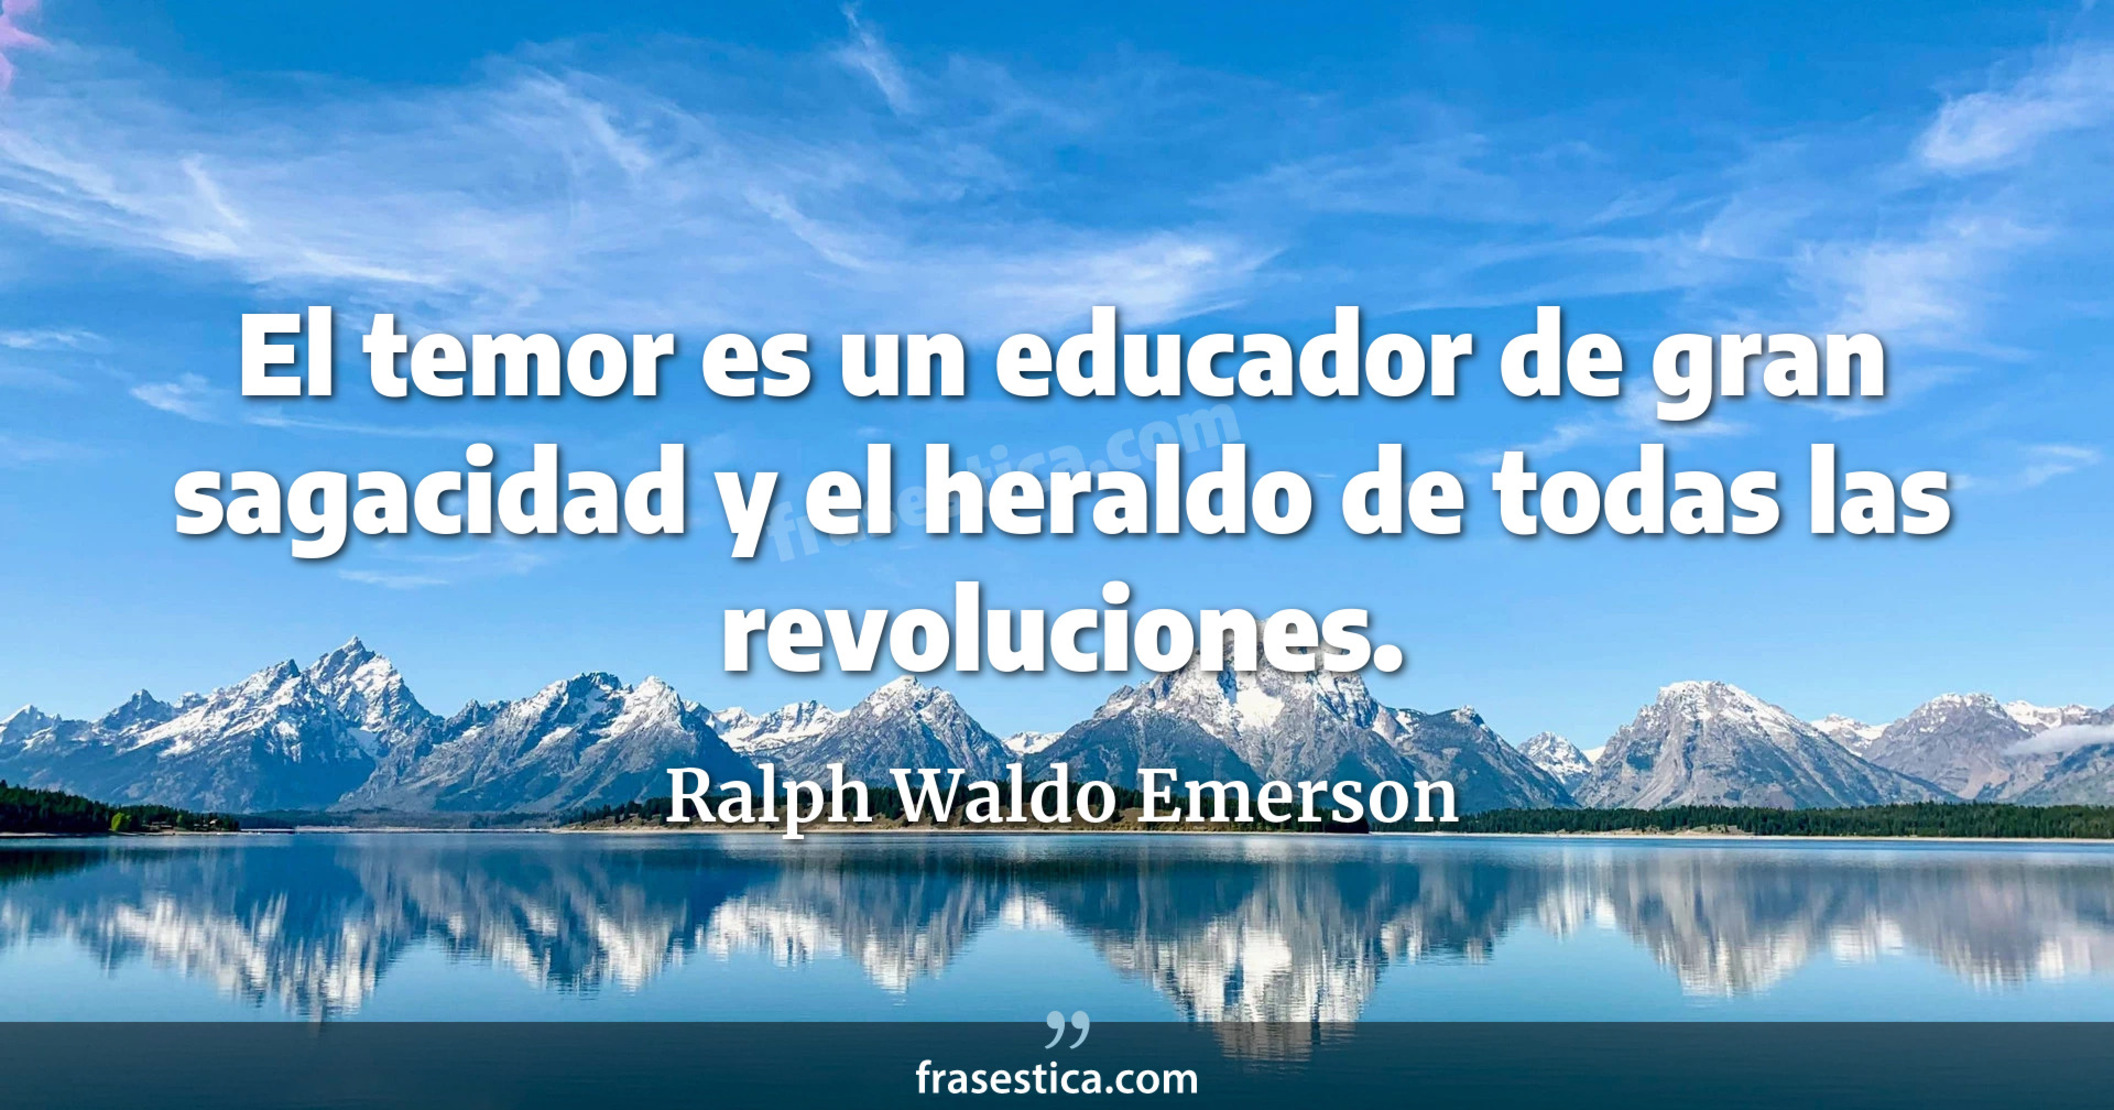 El temor es un educador de gran sagacidad y el heraldo de todas las revoluciones. - Ralph Waldo Emerson